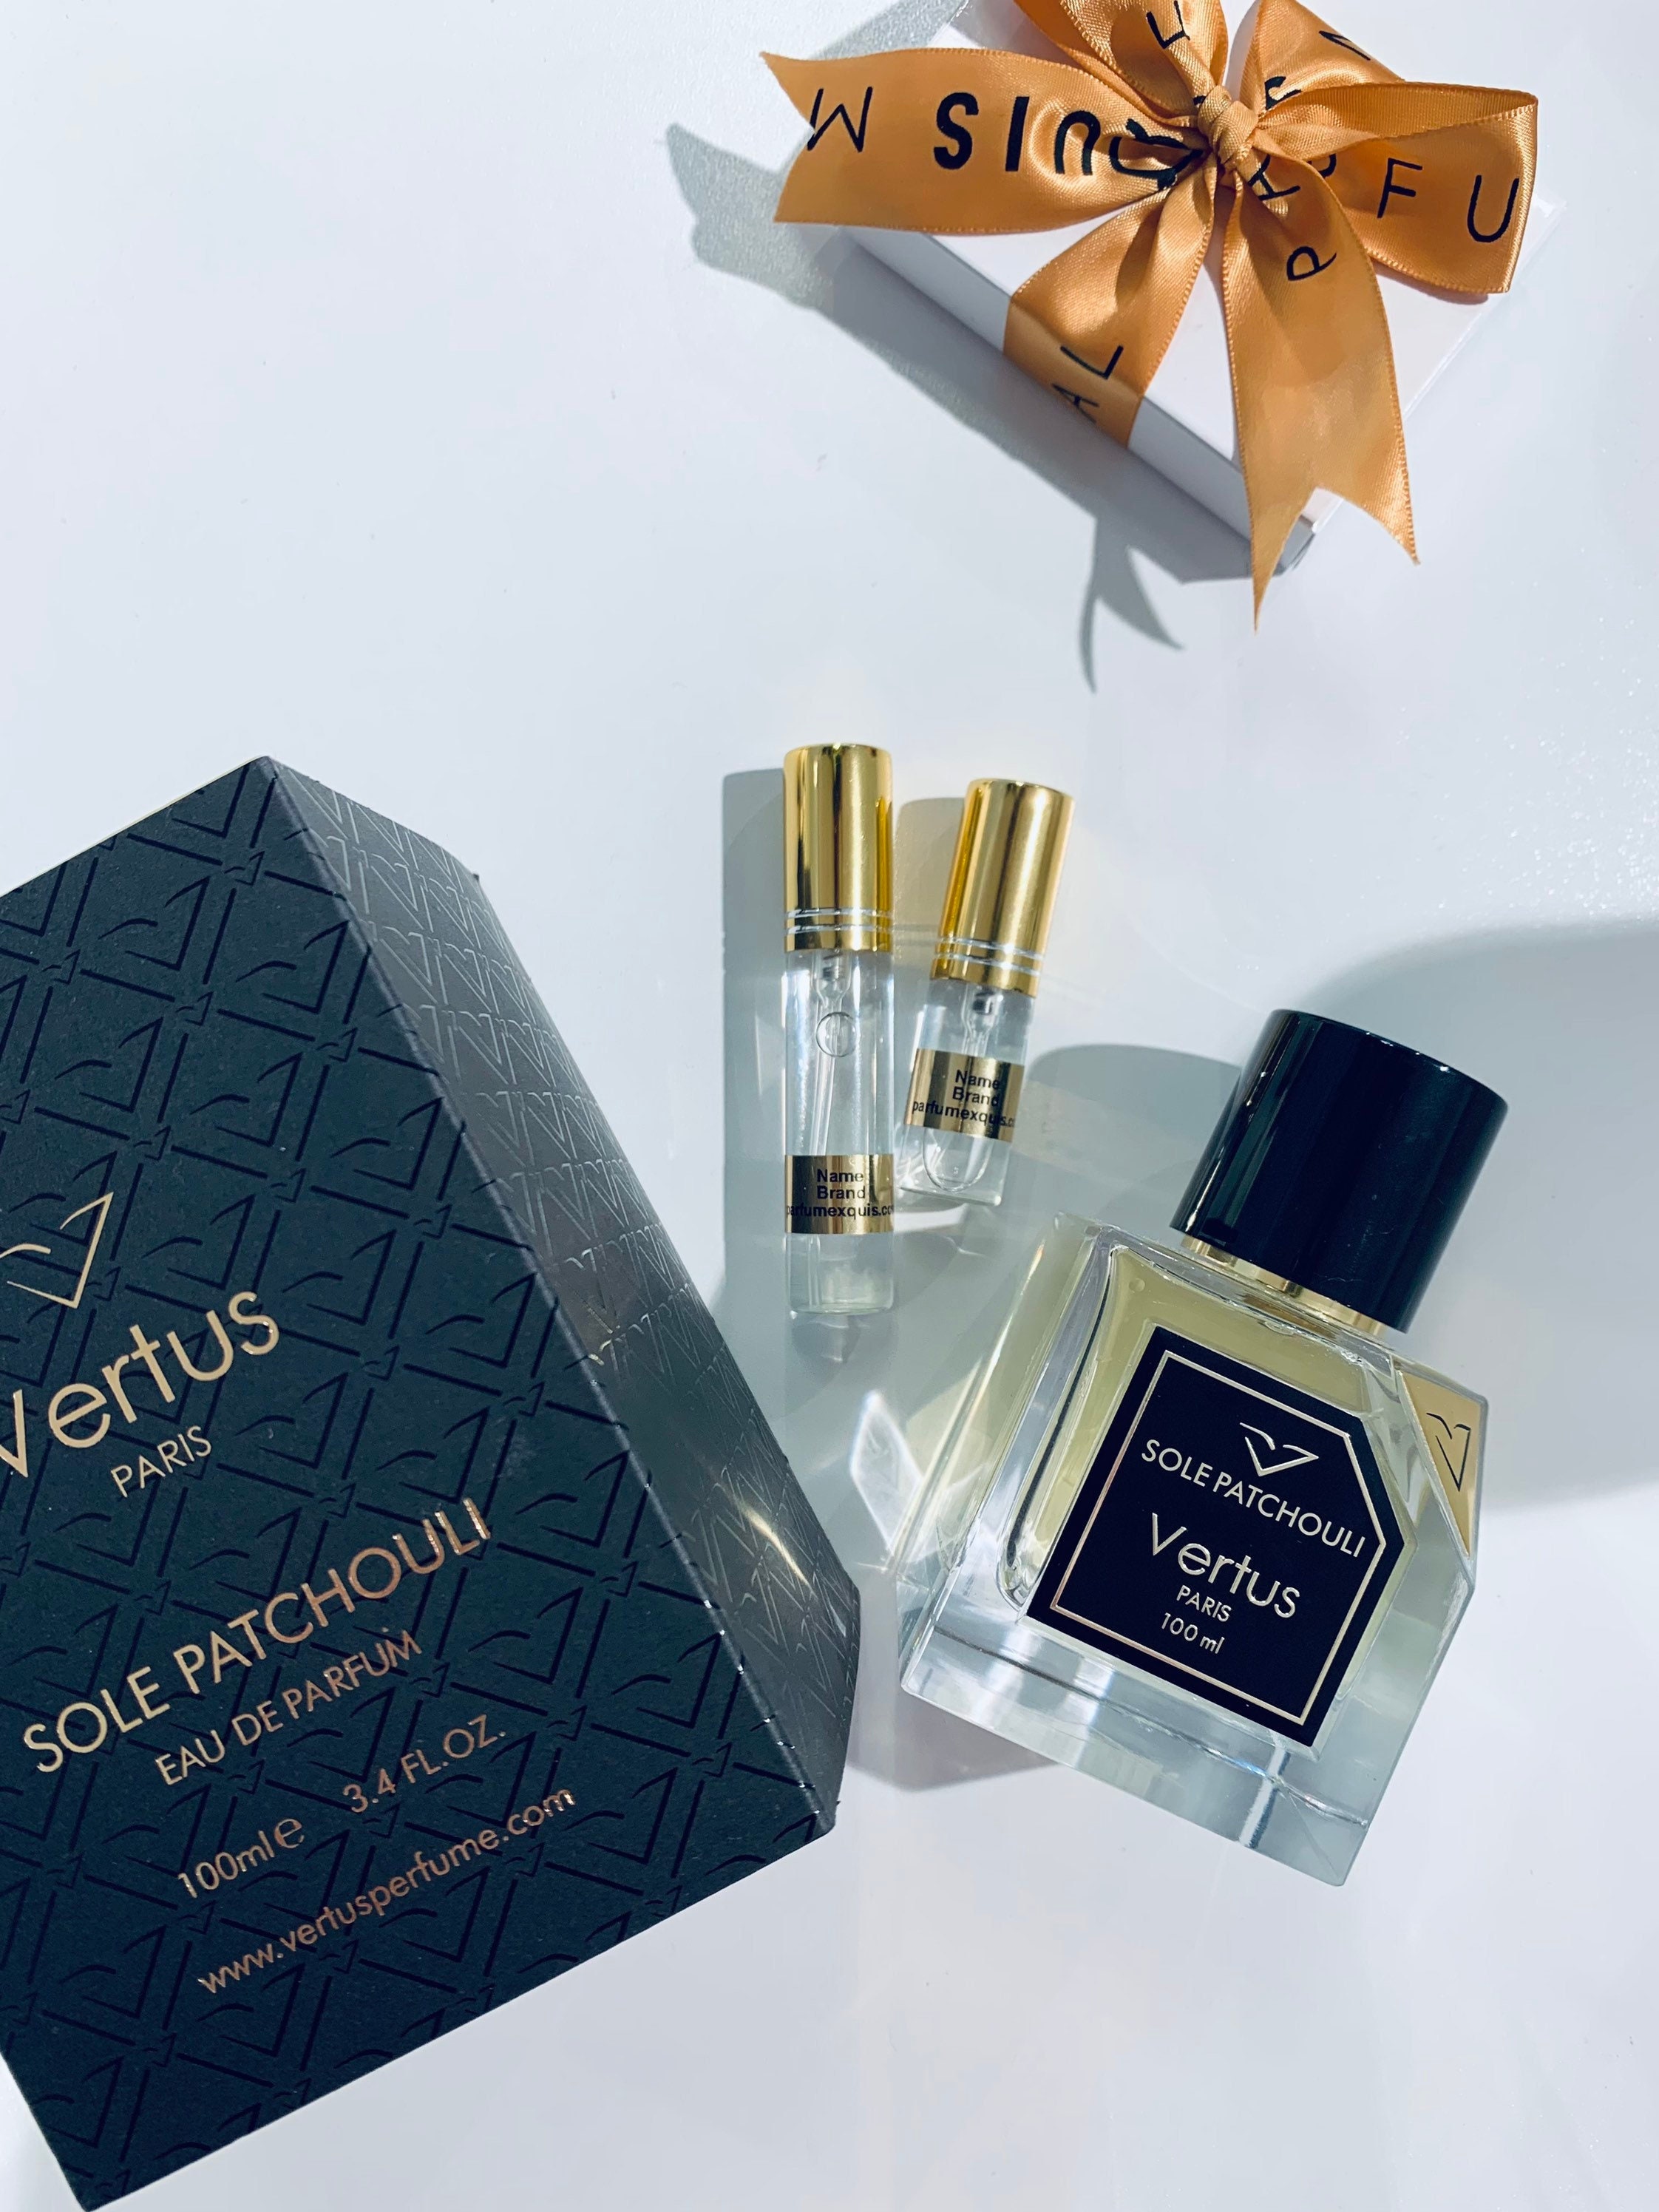 Sole Patchouli Vertus Paris Eau De Parfum Spray Langanhaltendes Parfum für  Damen und Herren Sample Size Travel Decant 5ml 10ml -  Schweiz